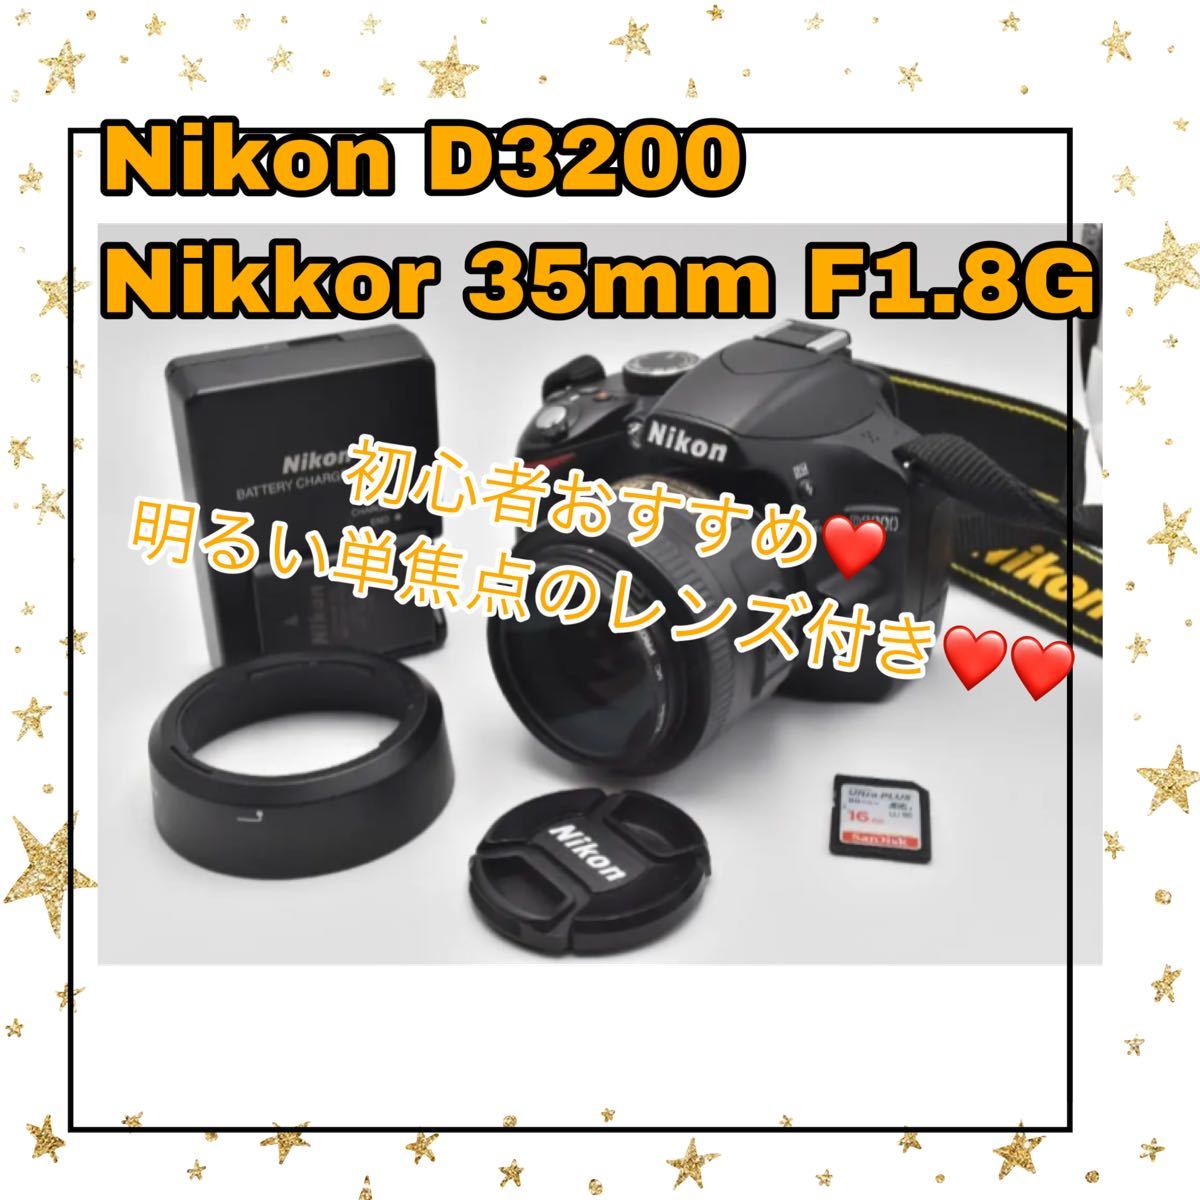 公式通販激安店舗 Nikon D3200 単焦点レンズ、ズームレンズ付 BLACK デジタルカメラ